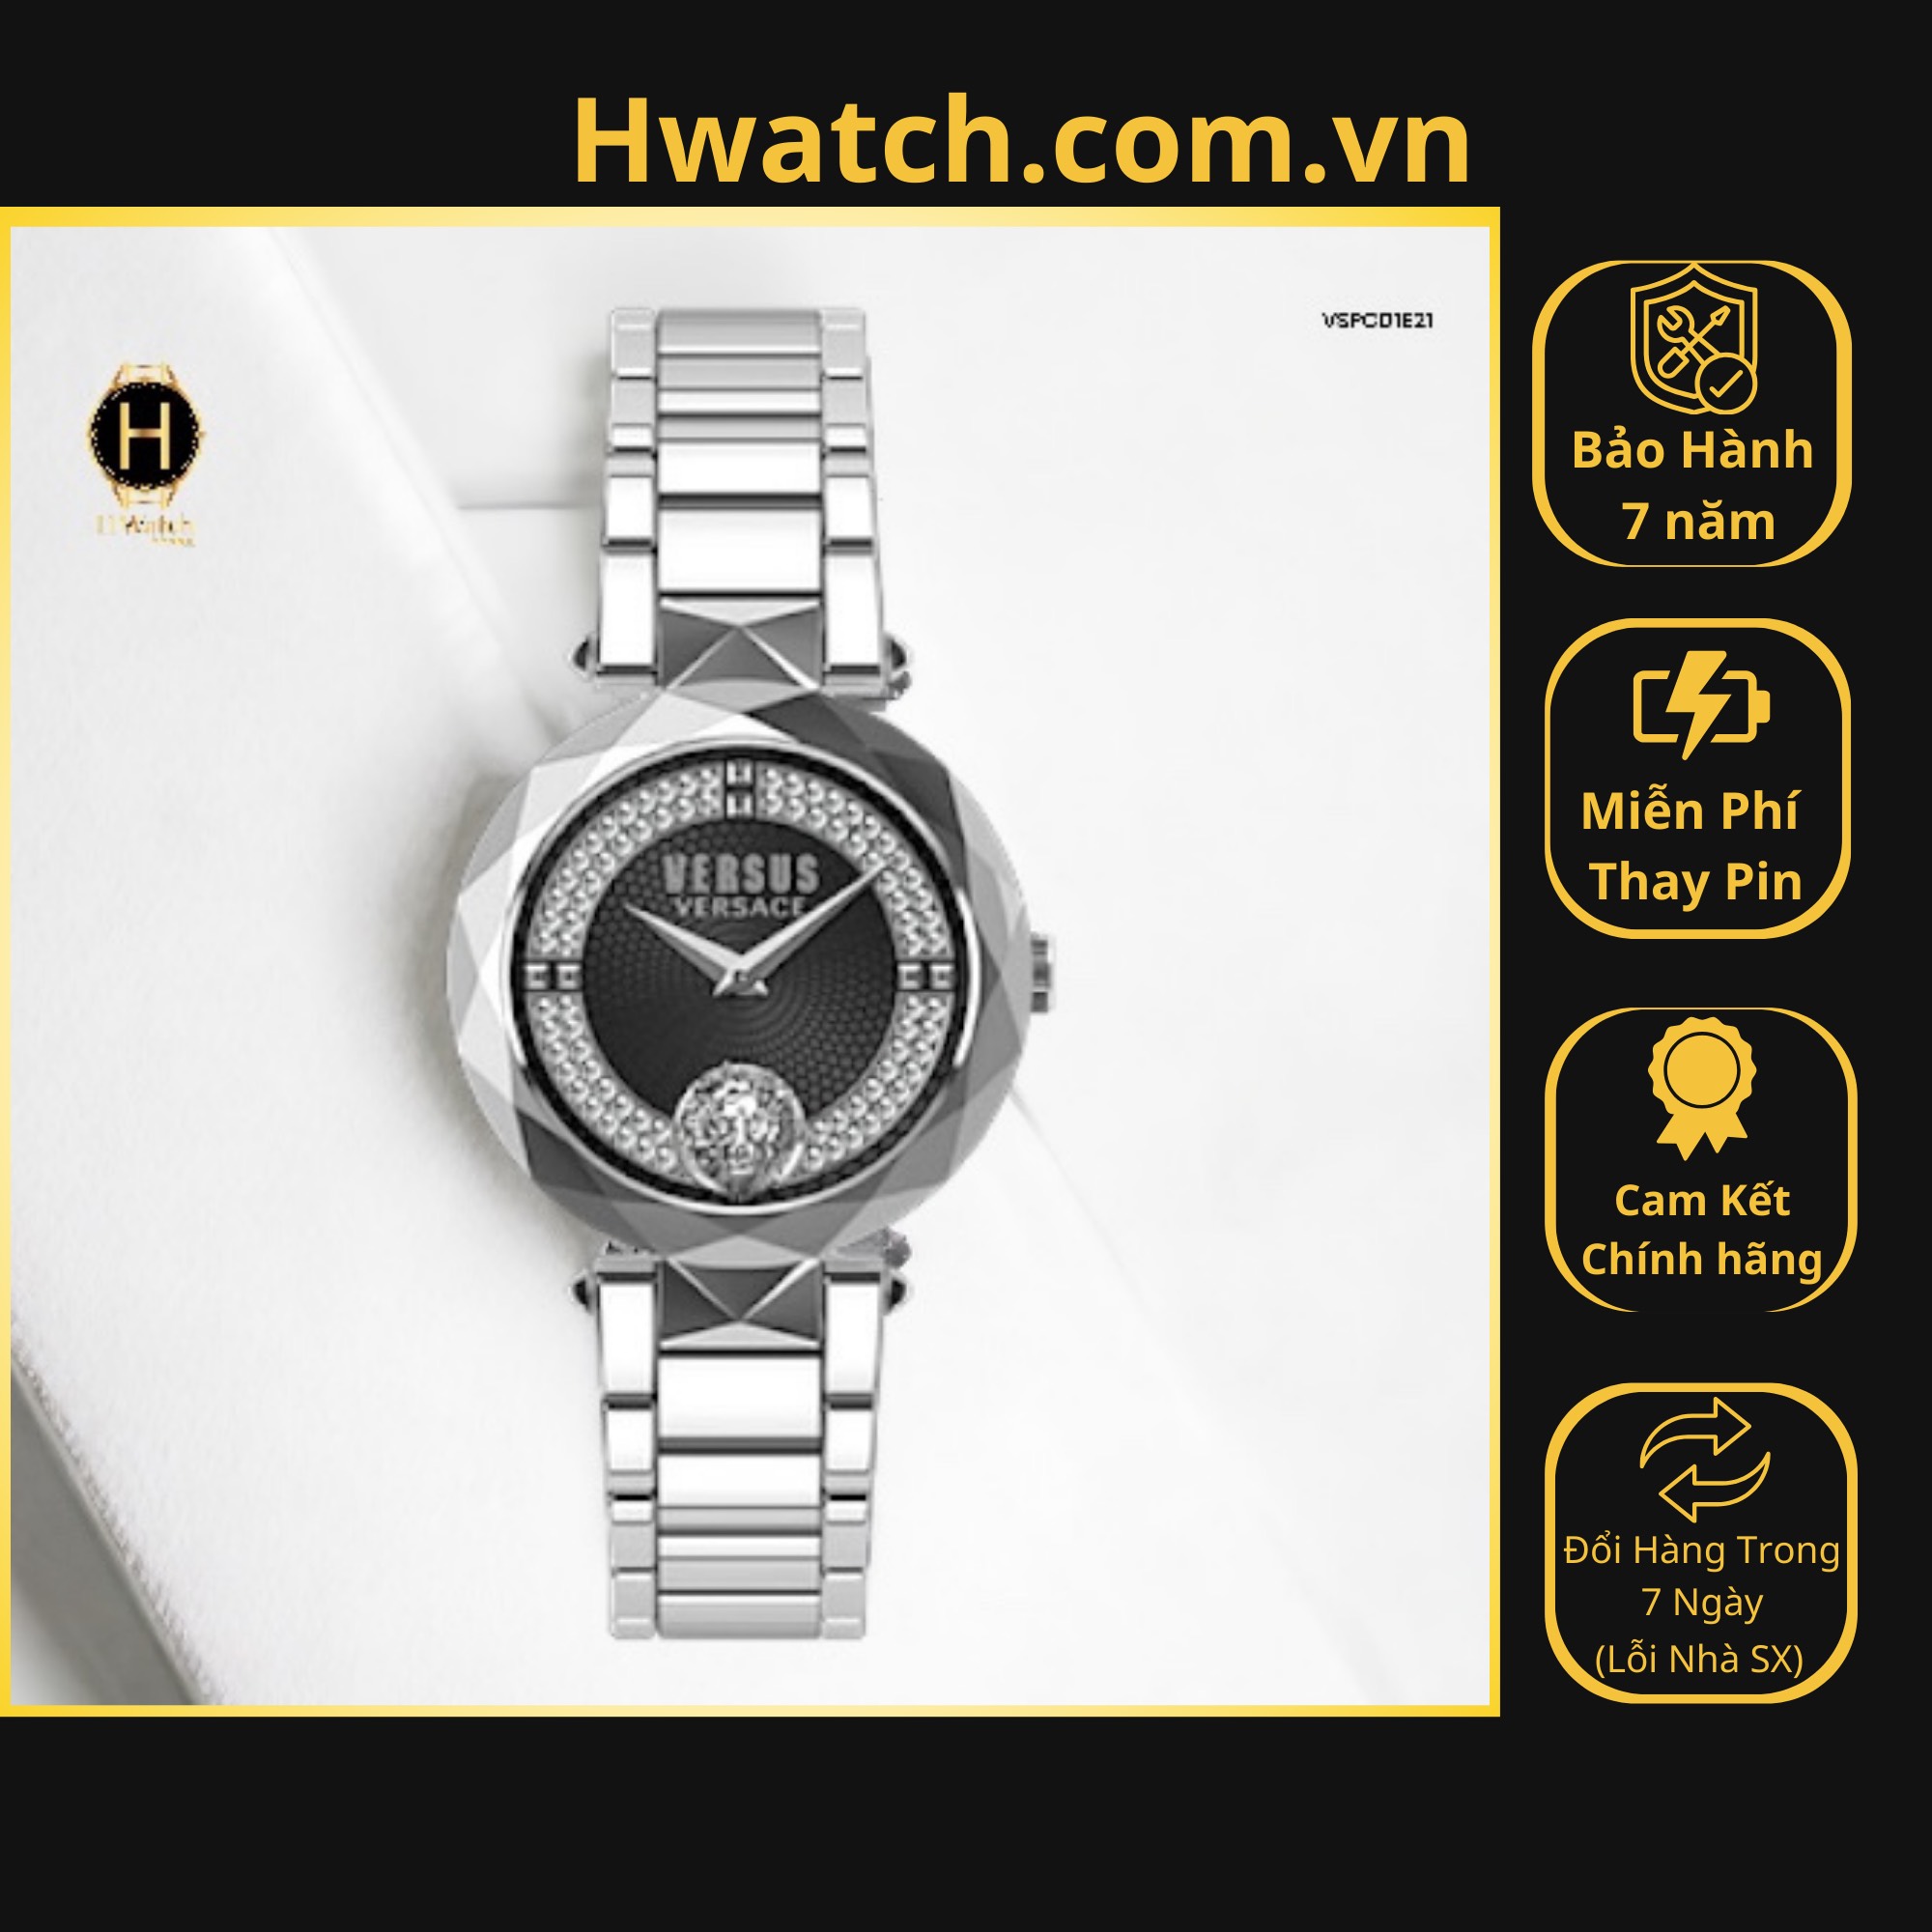 [Có sẵn] [Chính hãng] Đồng Hồ Nữ Versus By Versace Pin VSPCD1E21 Covent Garden Crystal White Dial Hwatch.com.vn